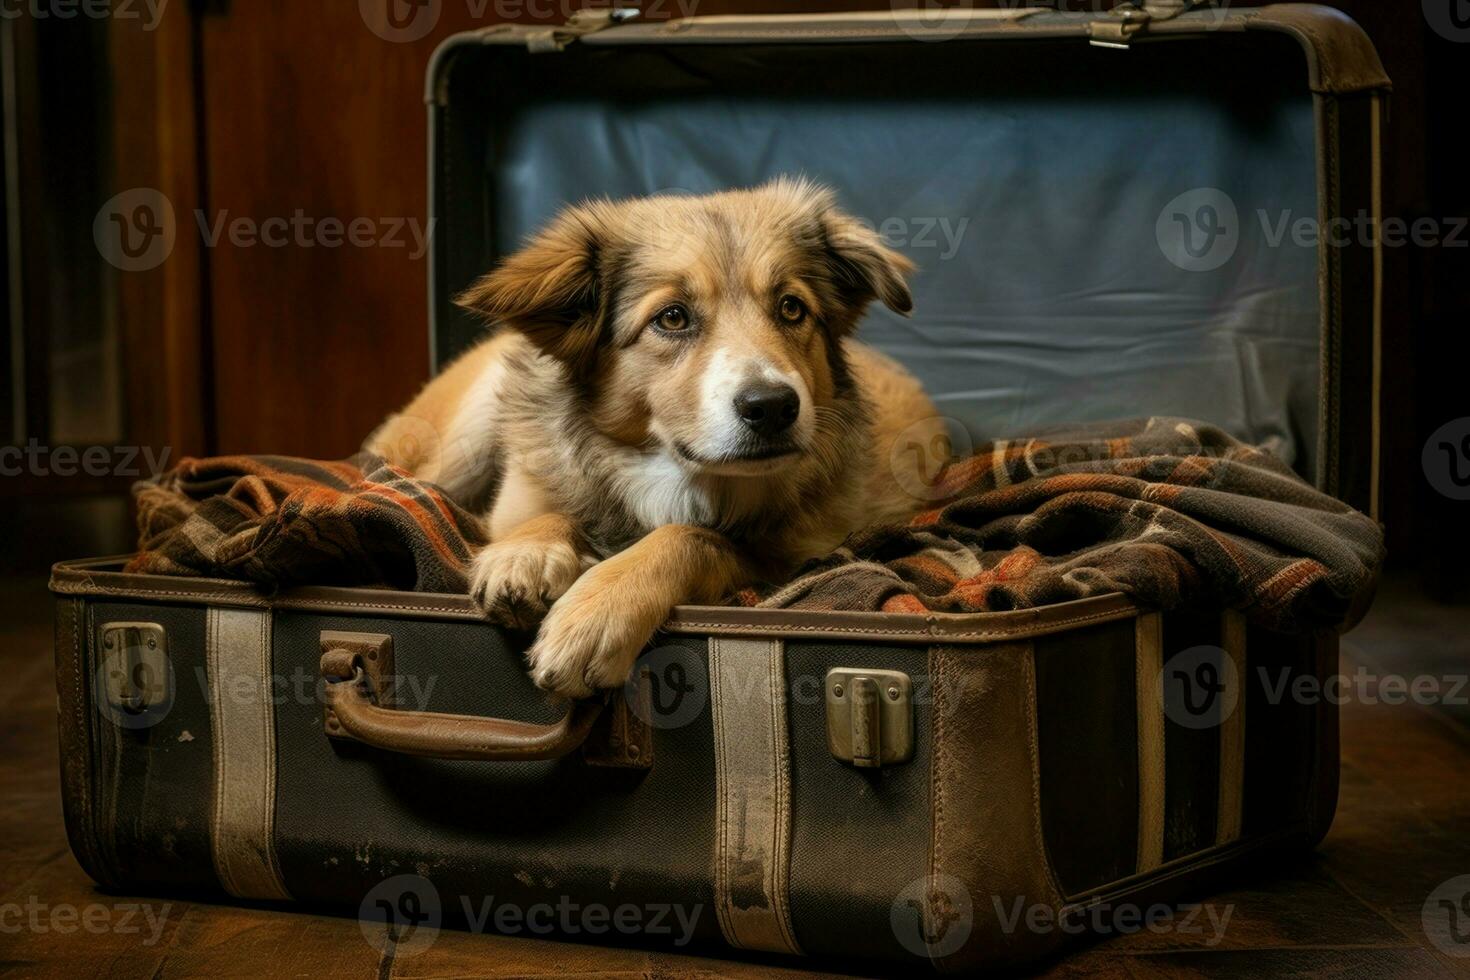 abenteuerlich Hund sitzen beim öffnen Koffer. Ferien Reise foto